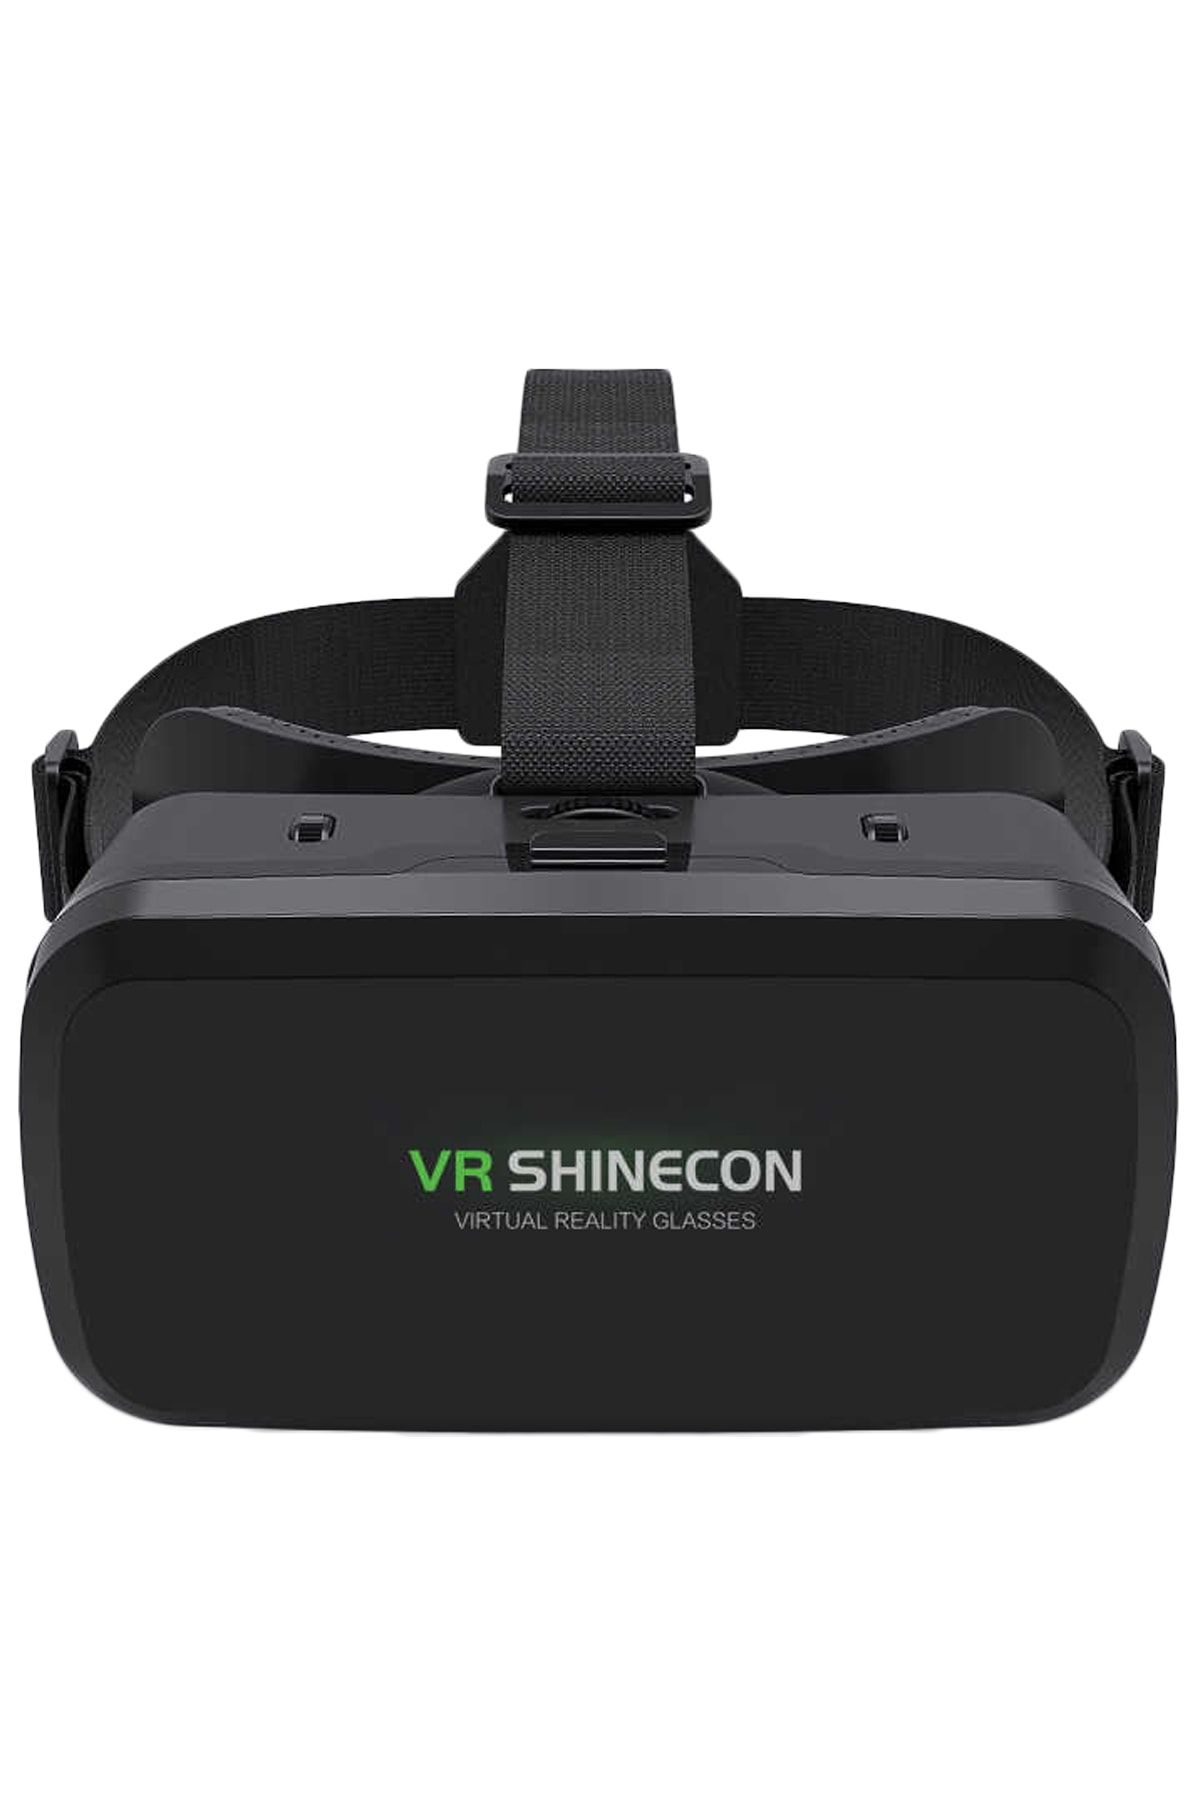 VR Shinecon Shinecon 3d Sanal Gerçeklik Gözlüğü 3.5-6.0 İnç